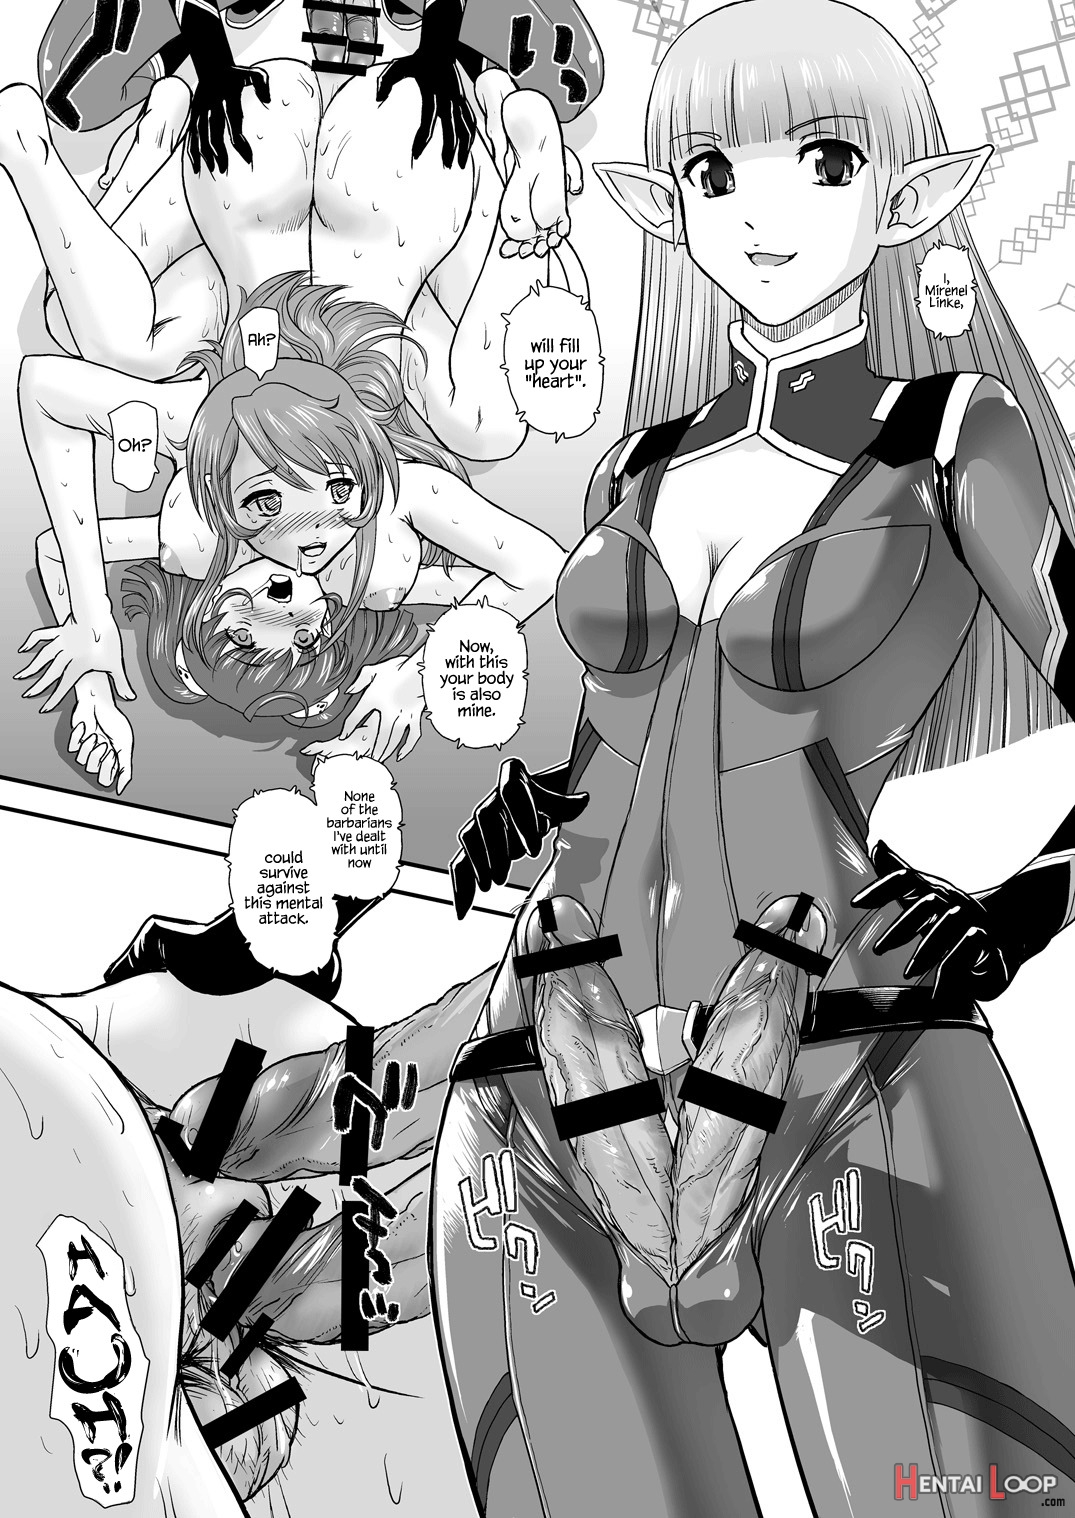 Yamato 2199 Alternative page 28